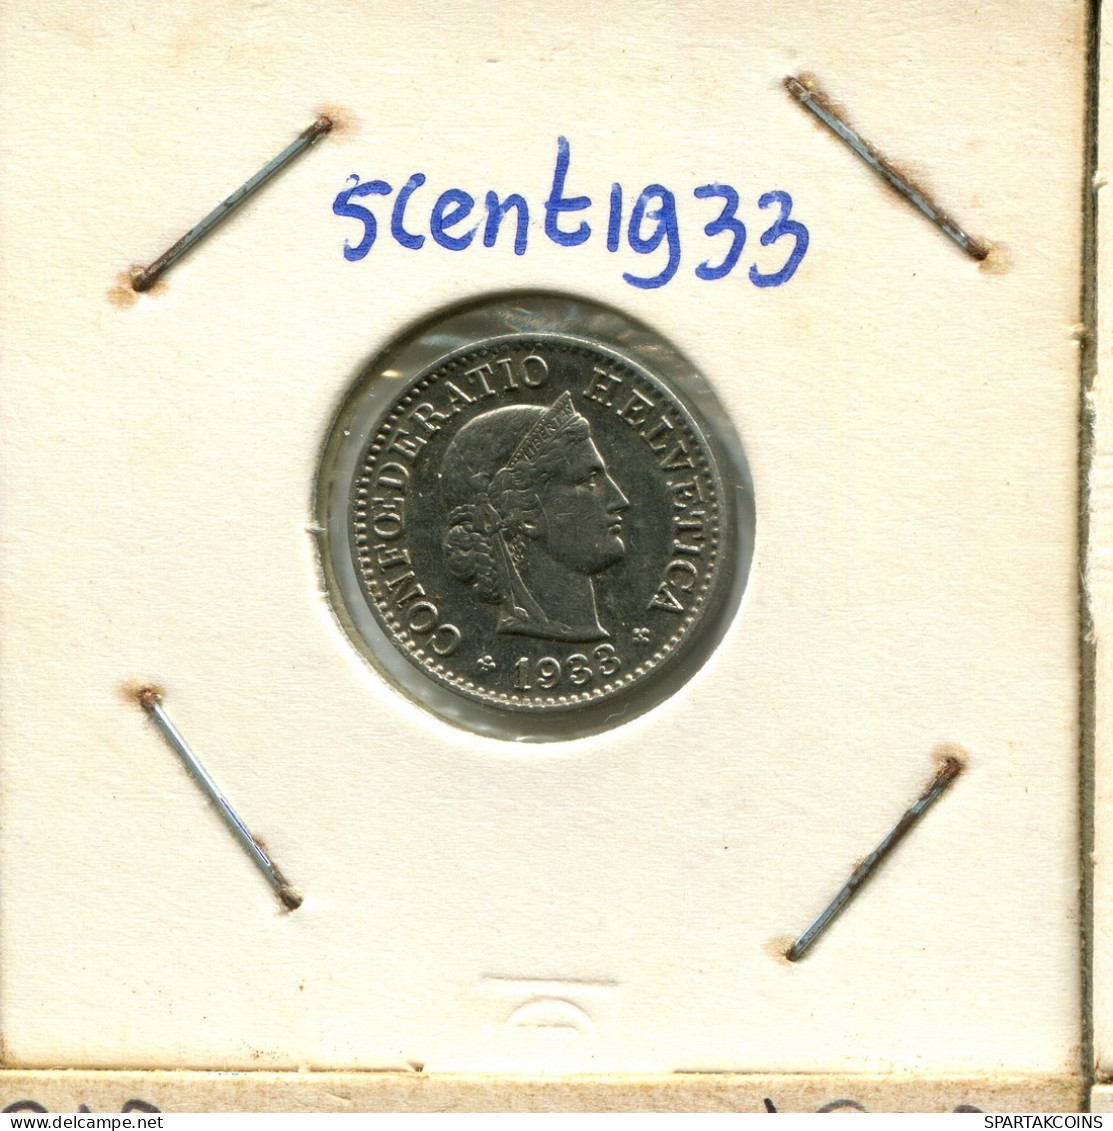 5 RAPPEN 1933 B SCHWEIZ SWITZERLAND Münze #AX925.3.D.A - Sonstige & Ohne Zuordnung